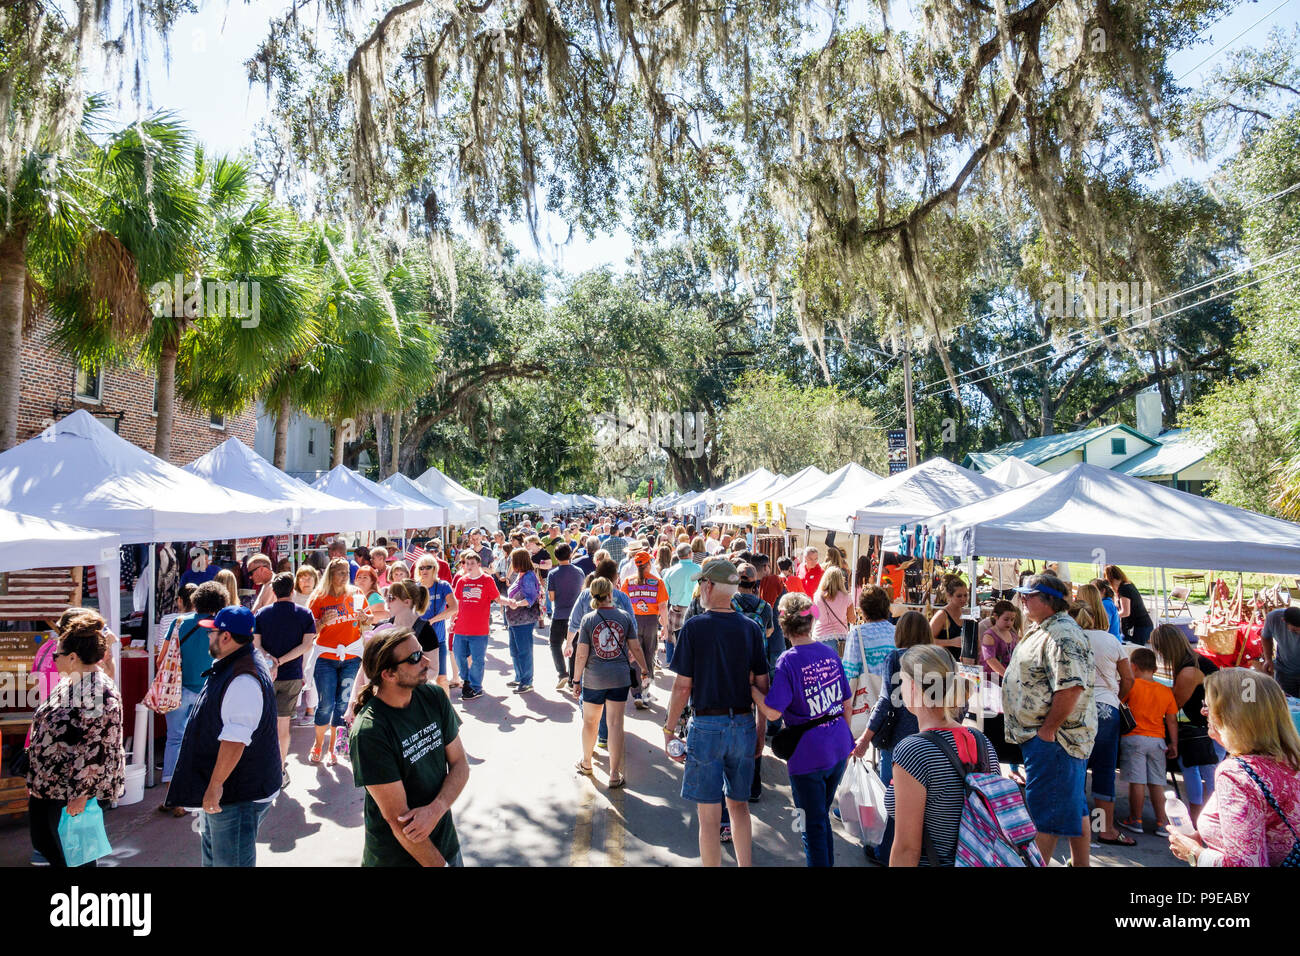 Florida,Micanopy,Fall Harvest Festival,stand comunita' annui della piccola citta' bancarelle venditori che vendono, folla, passeggiate, famiglie,FL171028211 Foto Stock